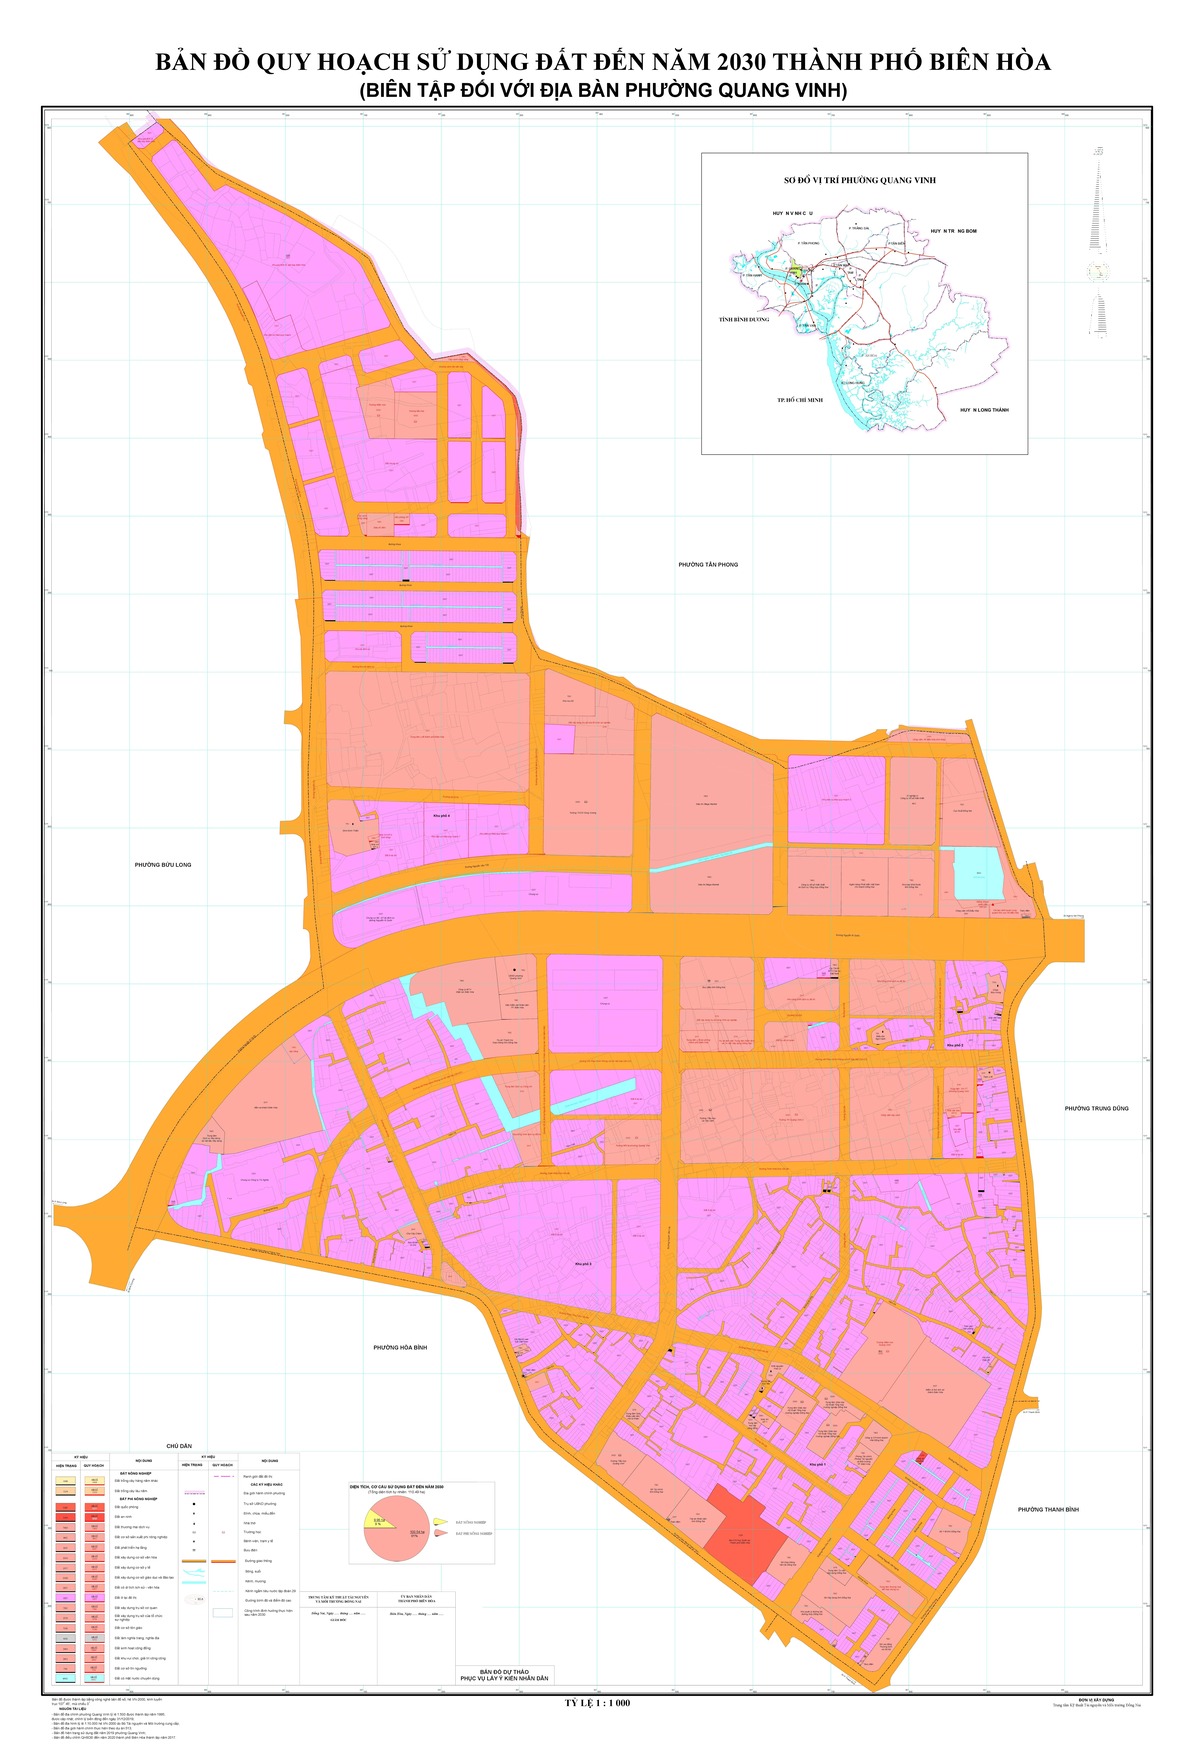 Bản đồ quy hoạch phường Quang Vinh, thành phố Biên Hòa, tỉnh Đồng Nai đến năm 2030